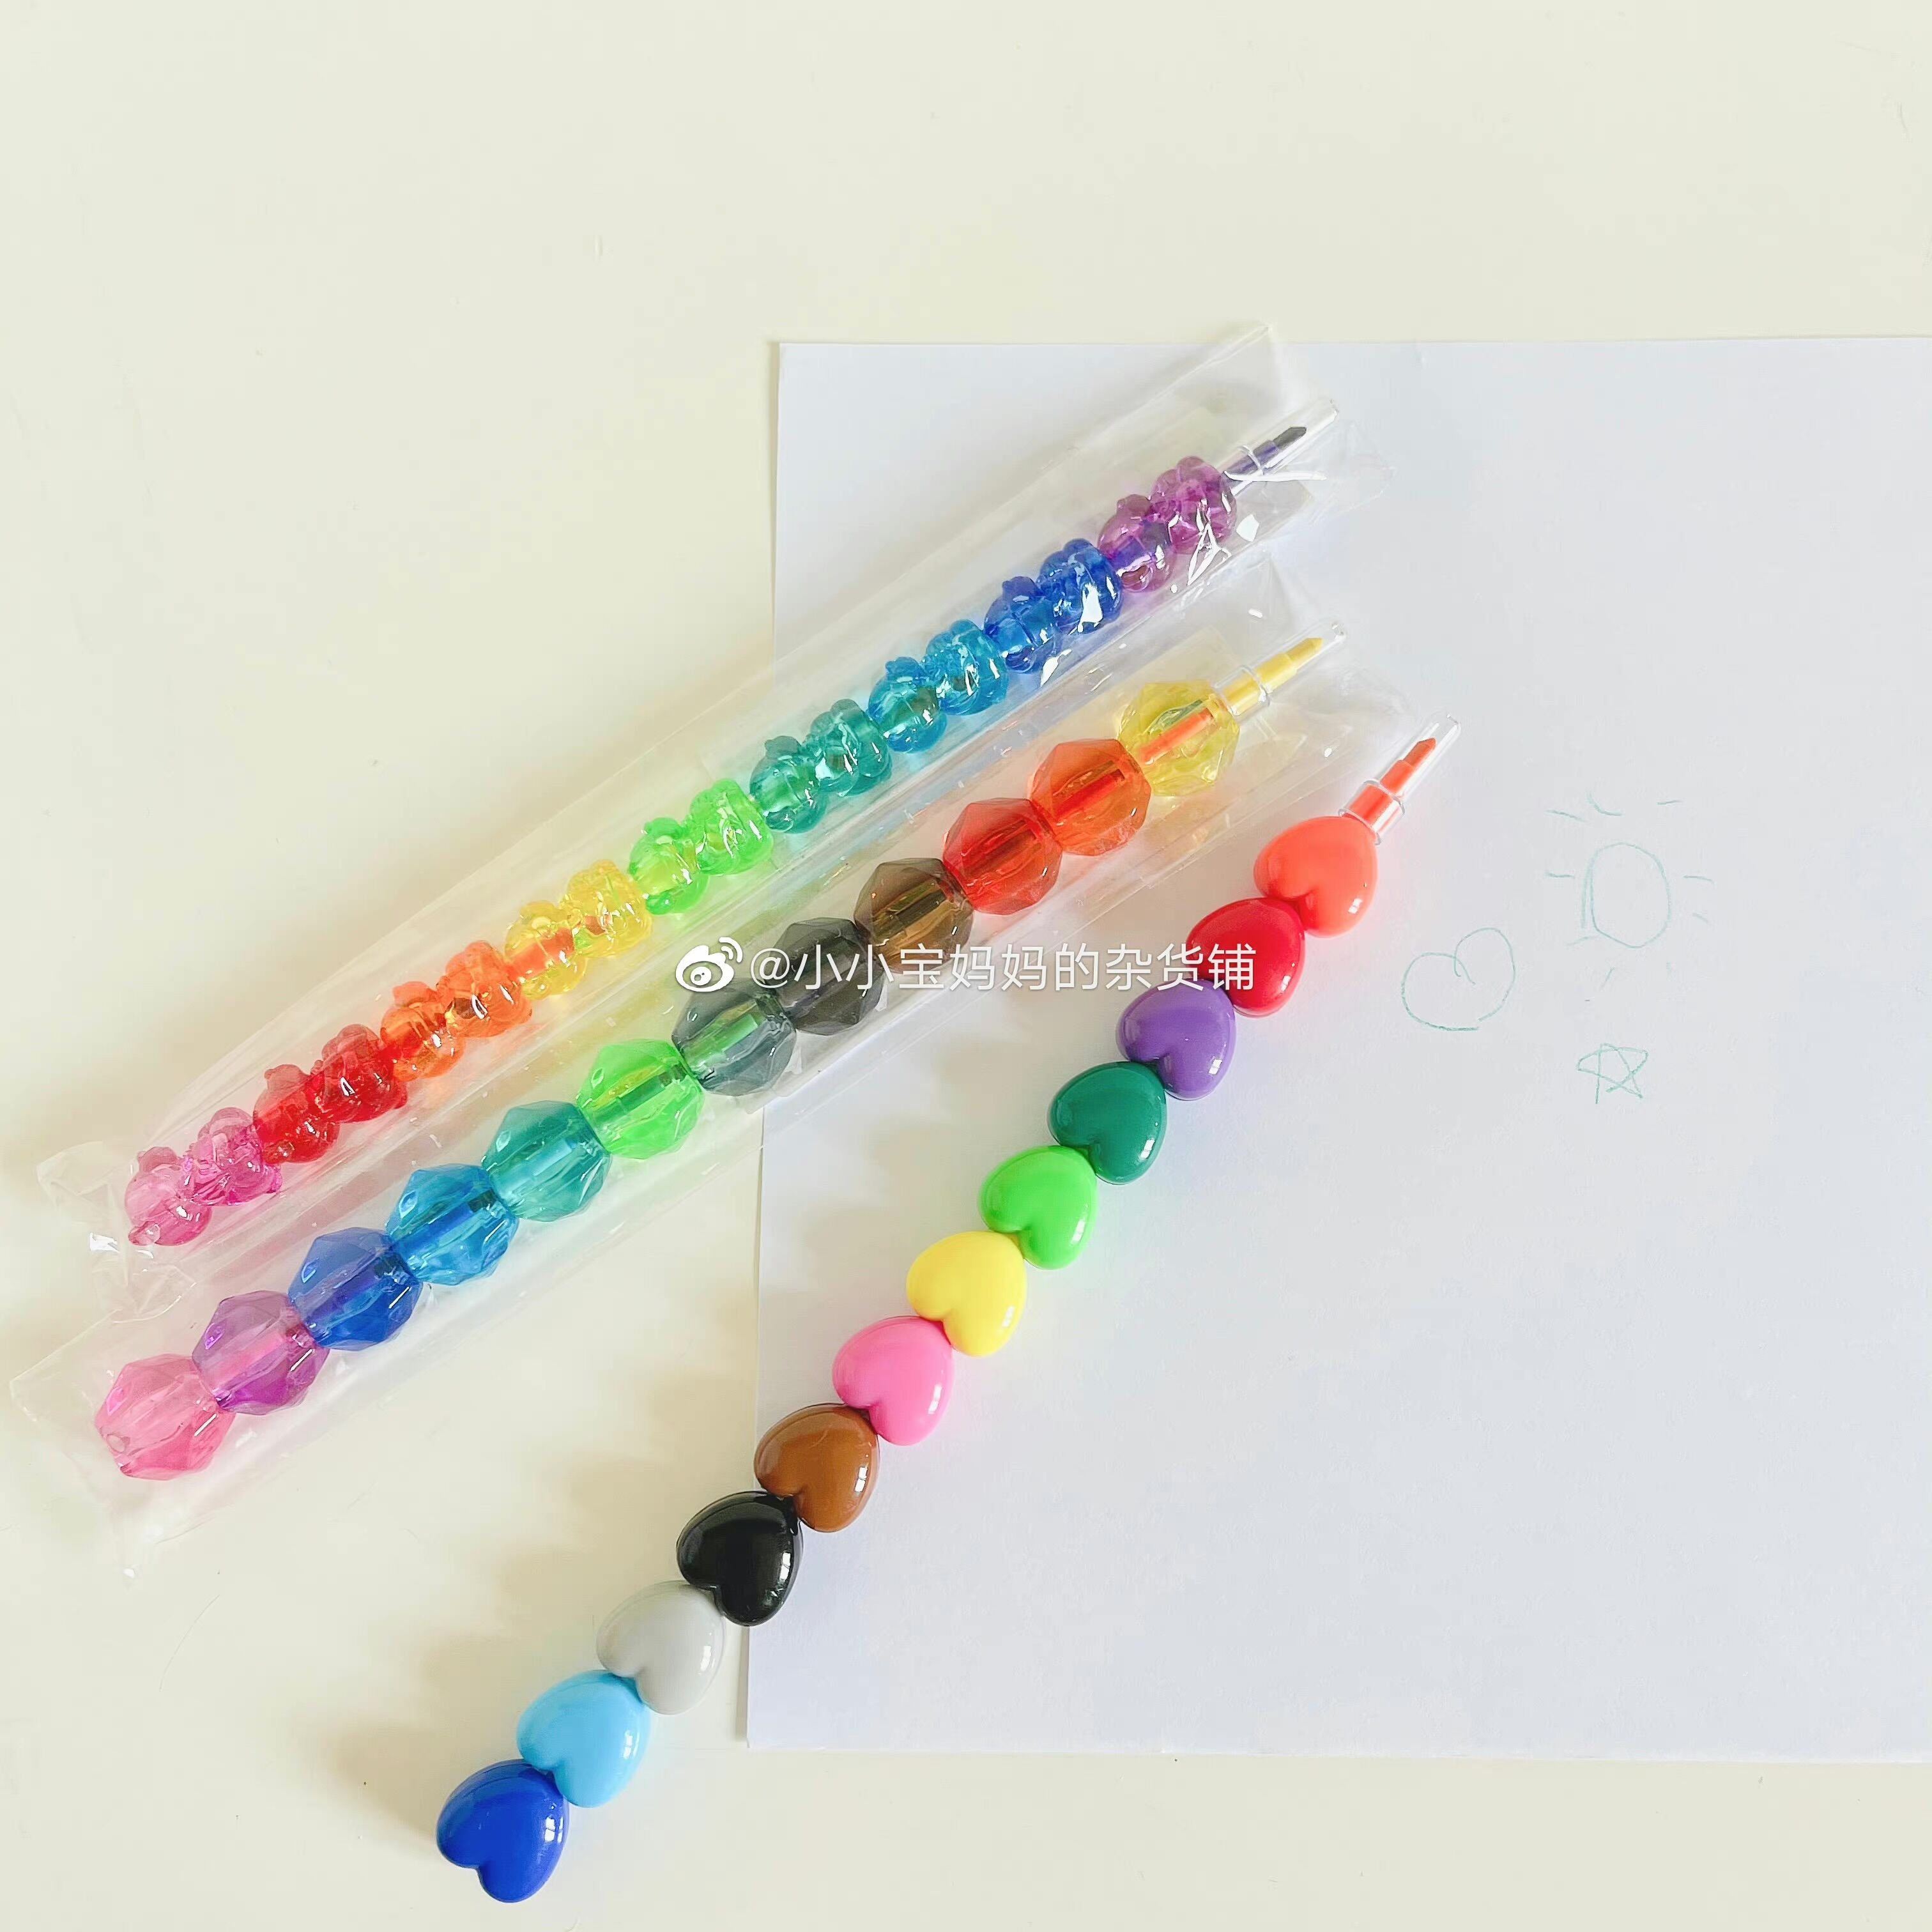 现货日本采购 超可爱创意可自由组合彩色宝石迷你蜡笔